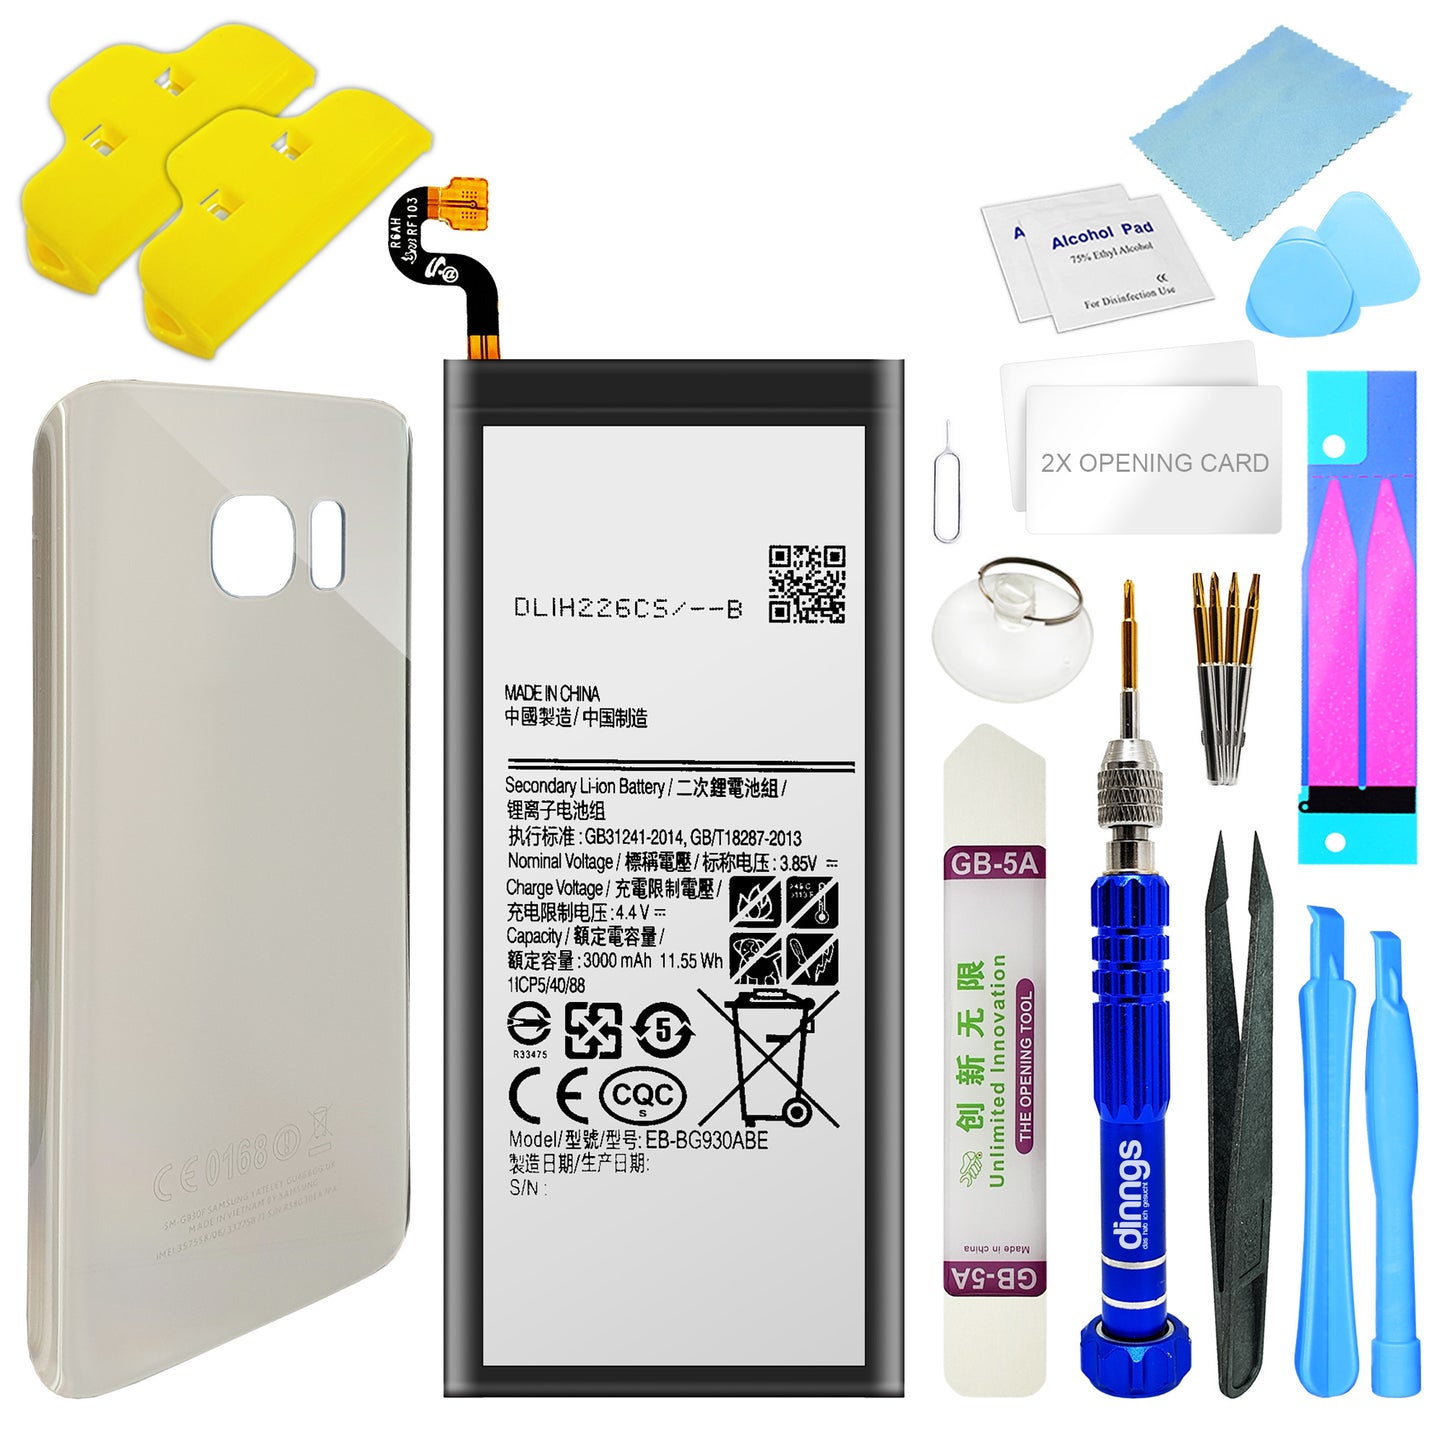 Ersatzakku Akku für Samsung Galaxy S7 SM-G930F EB-BG930ABE + Akkudeckel Silver (Silber) + Werkzeug Set / Umbau Kit